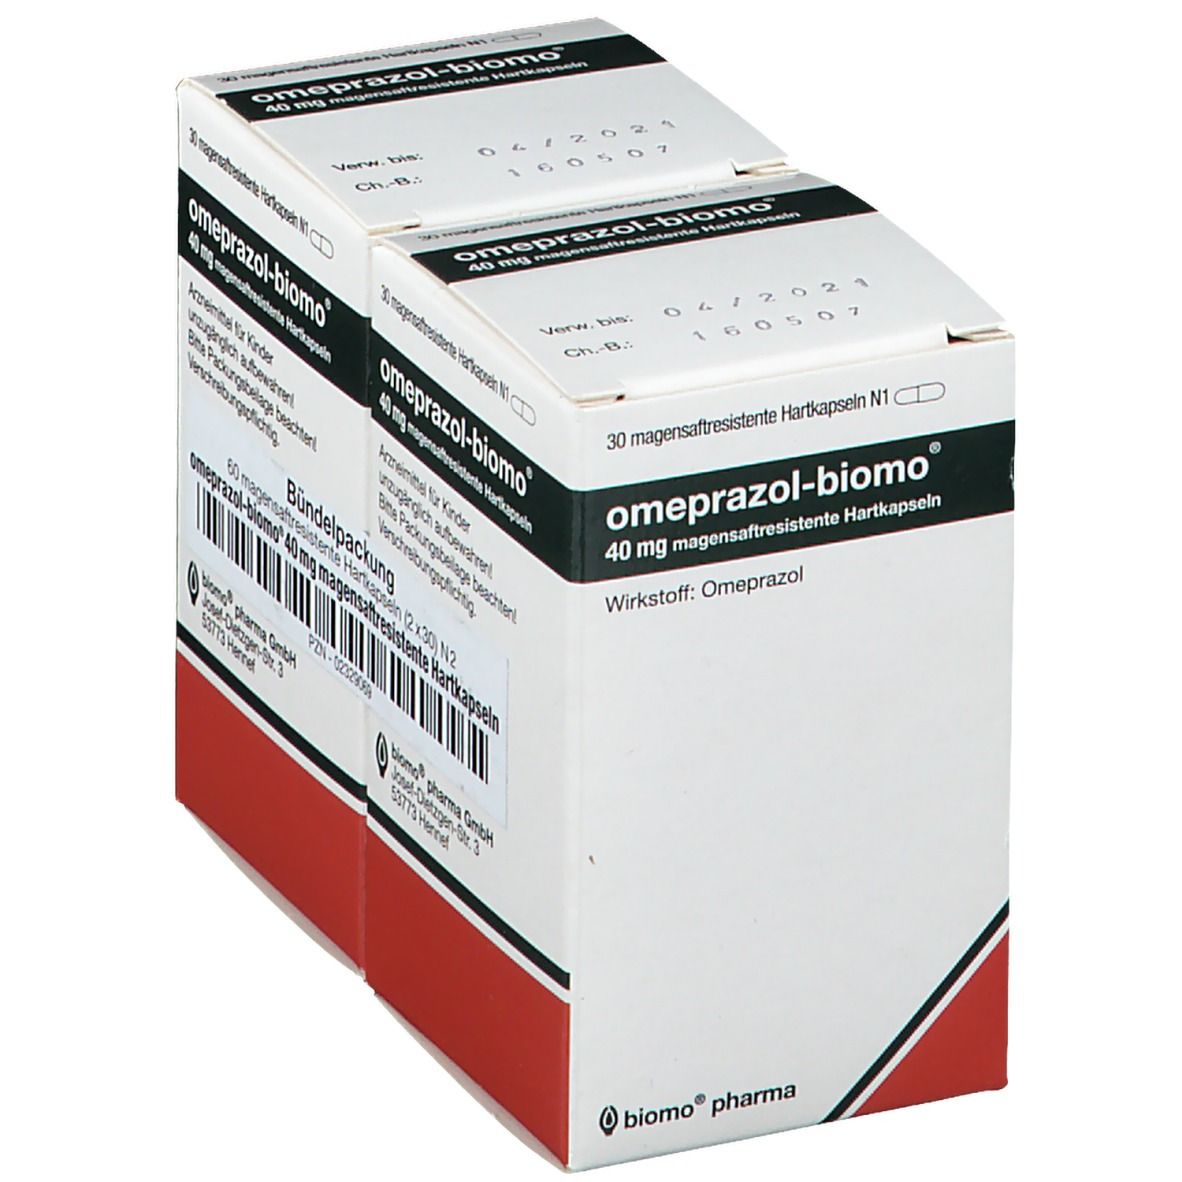 omeprazol-biomo® 40 mg